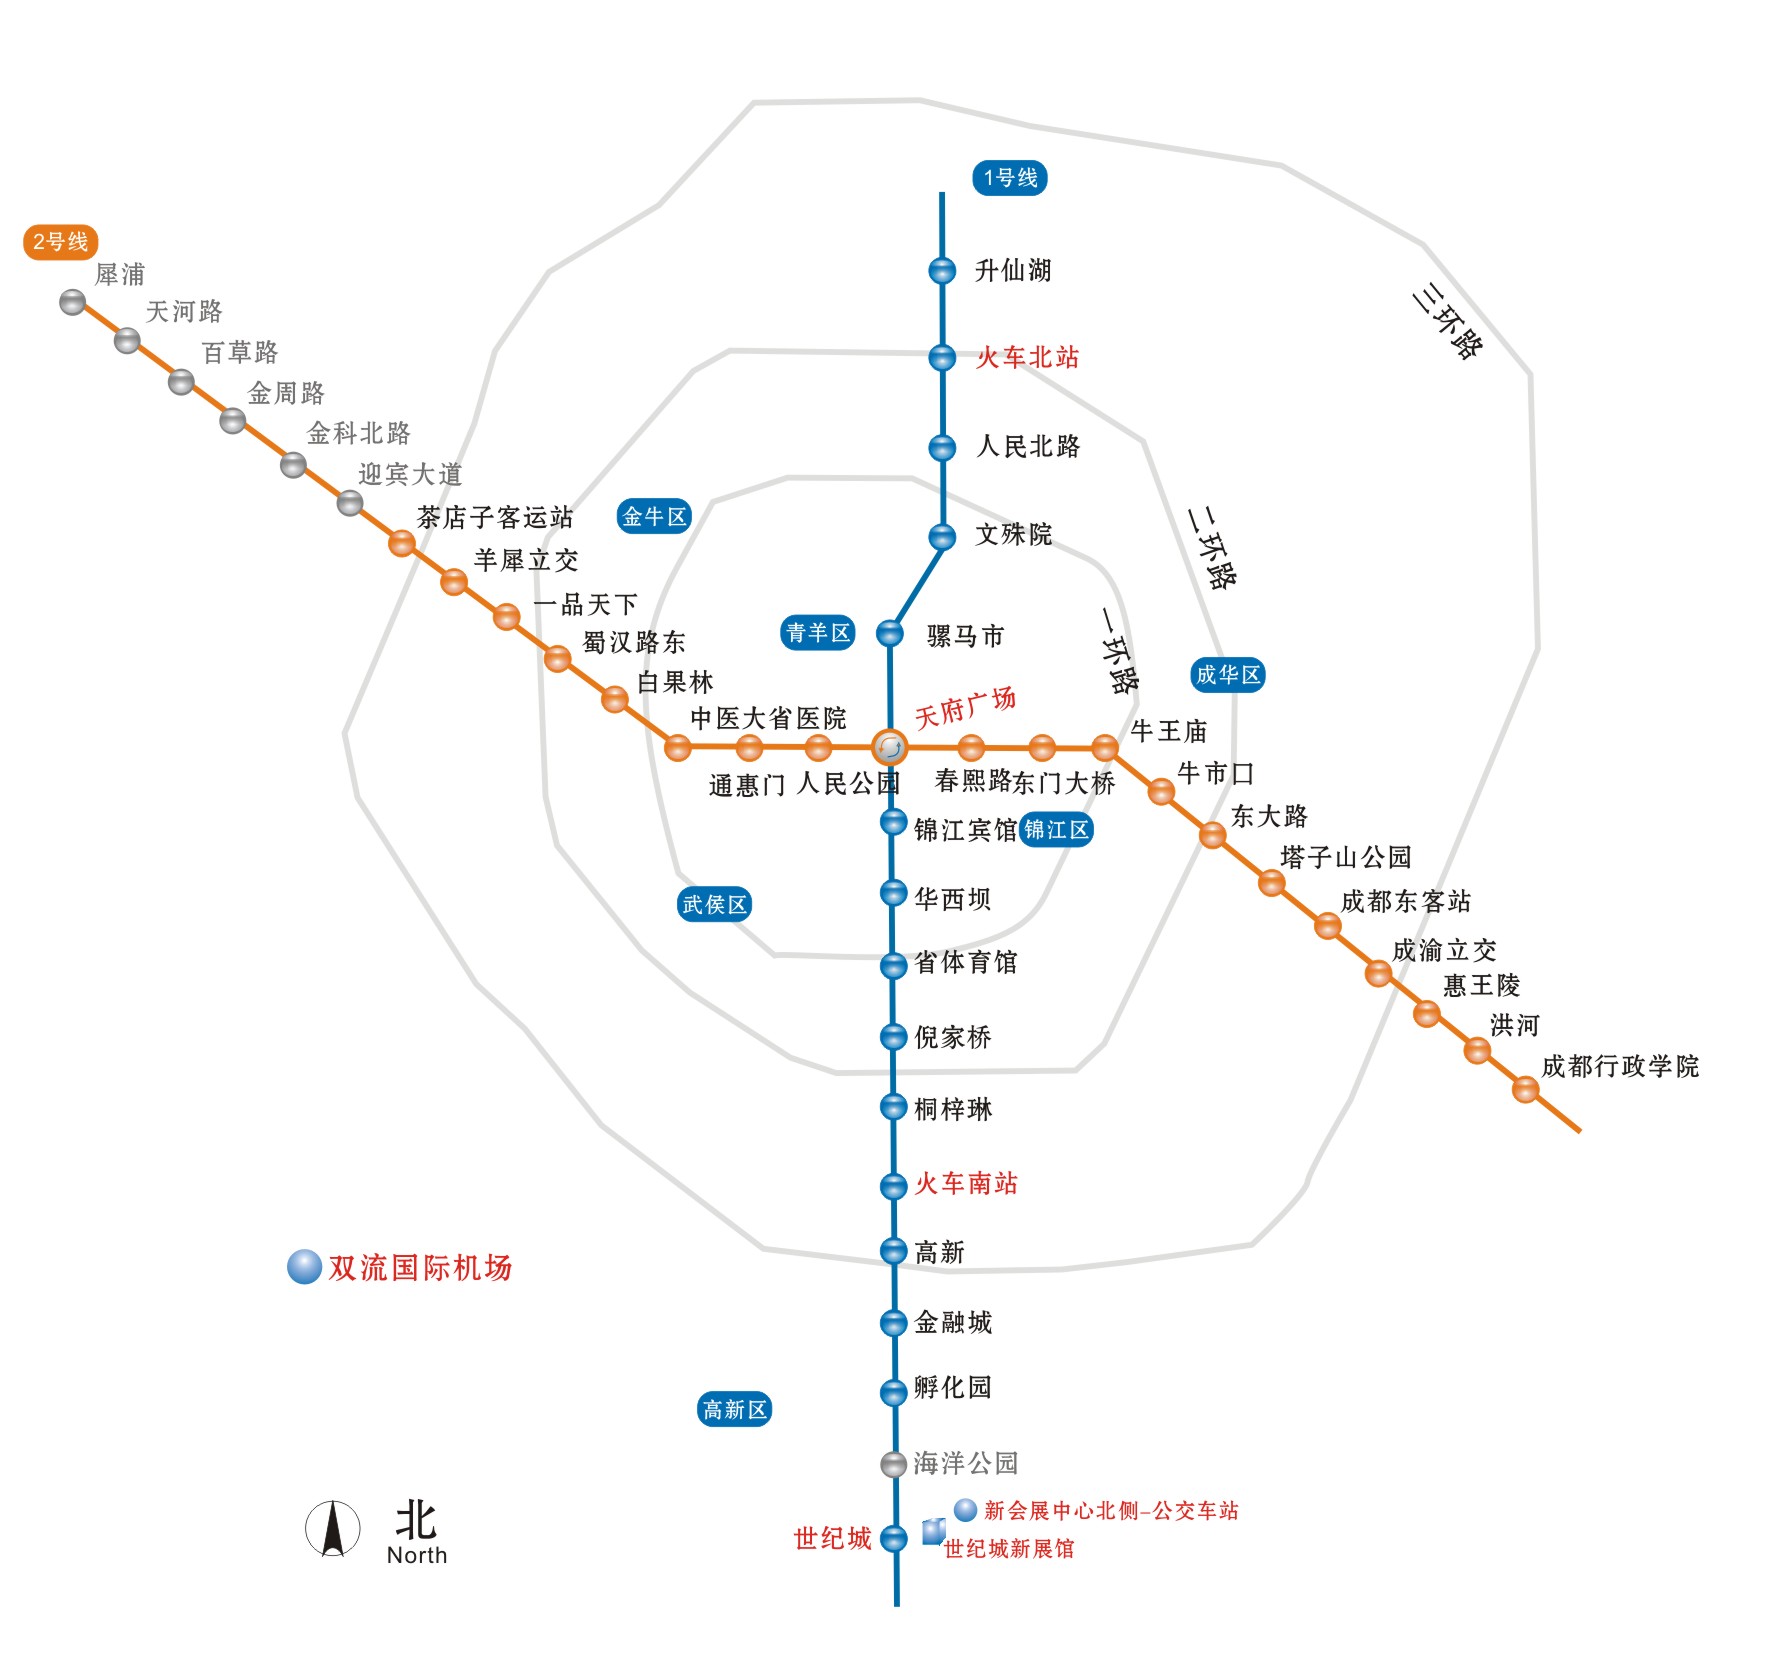 成都地铁16号线 站点图片